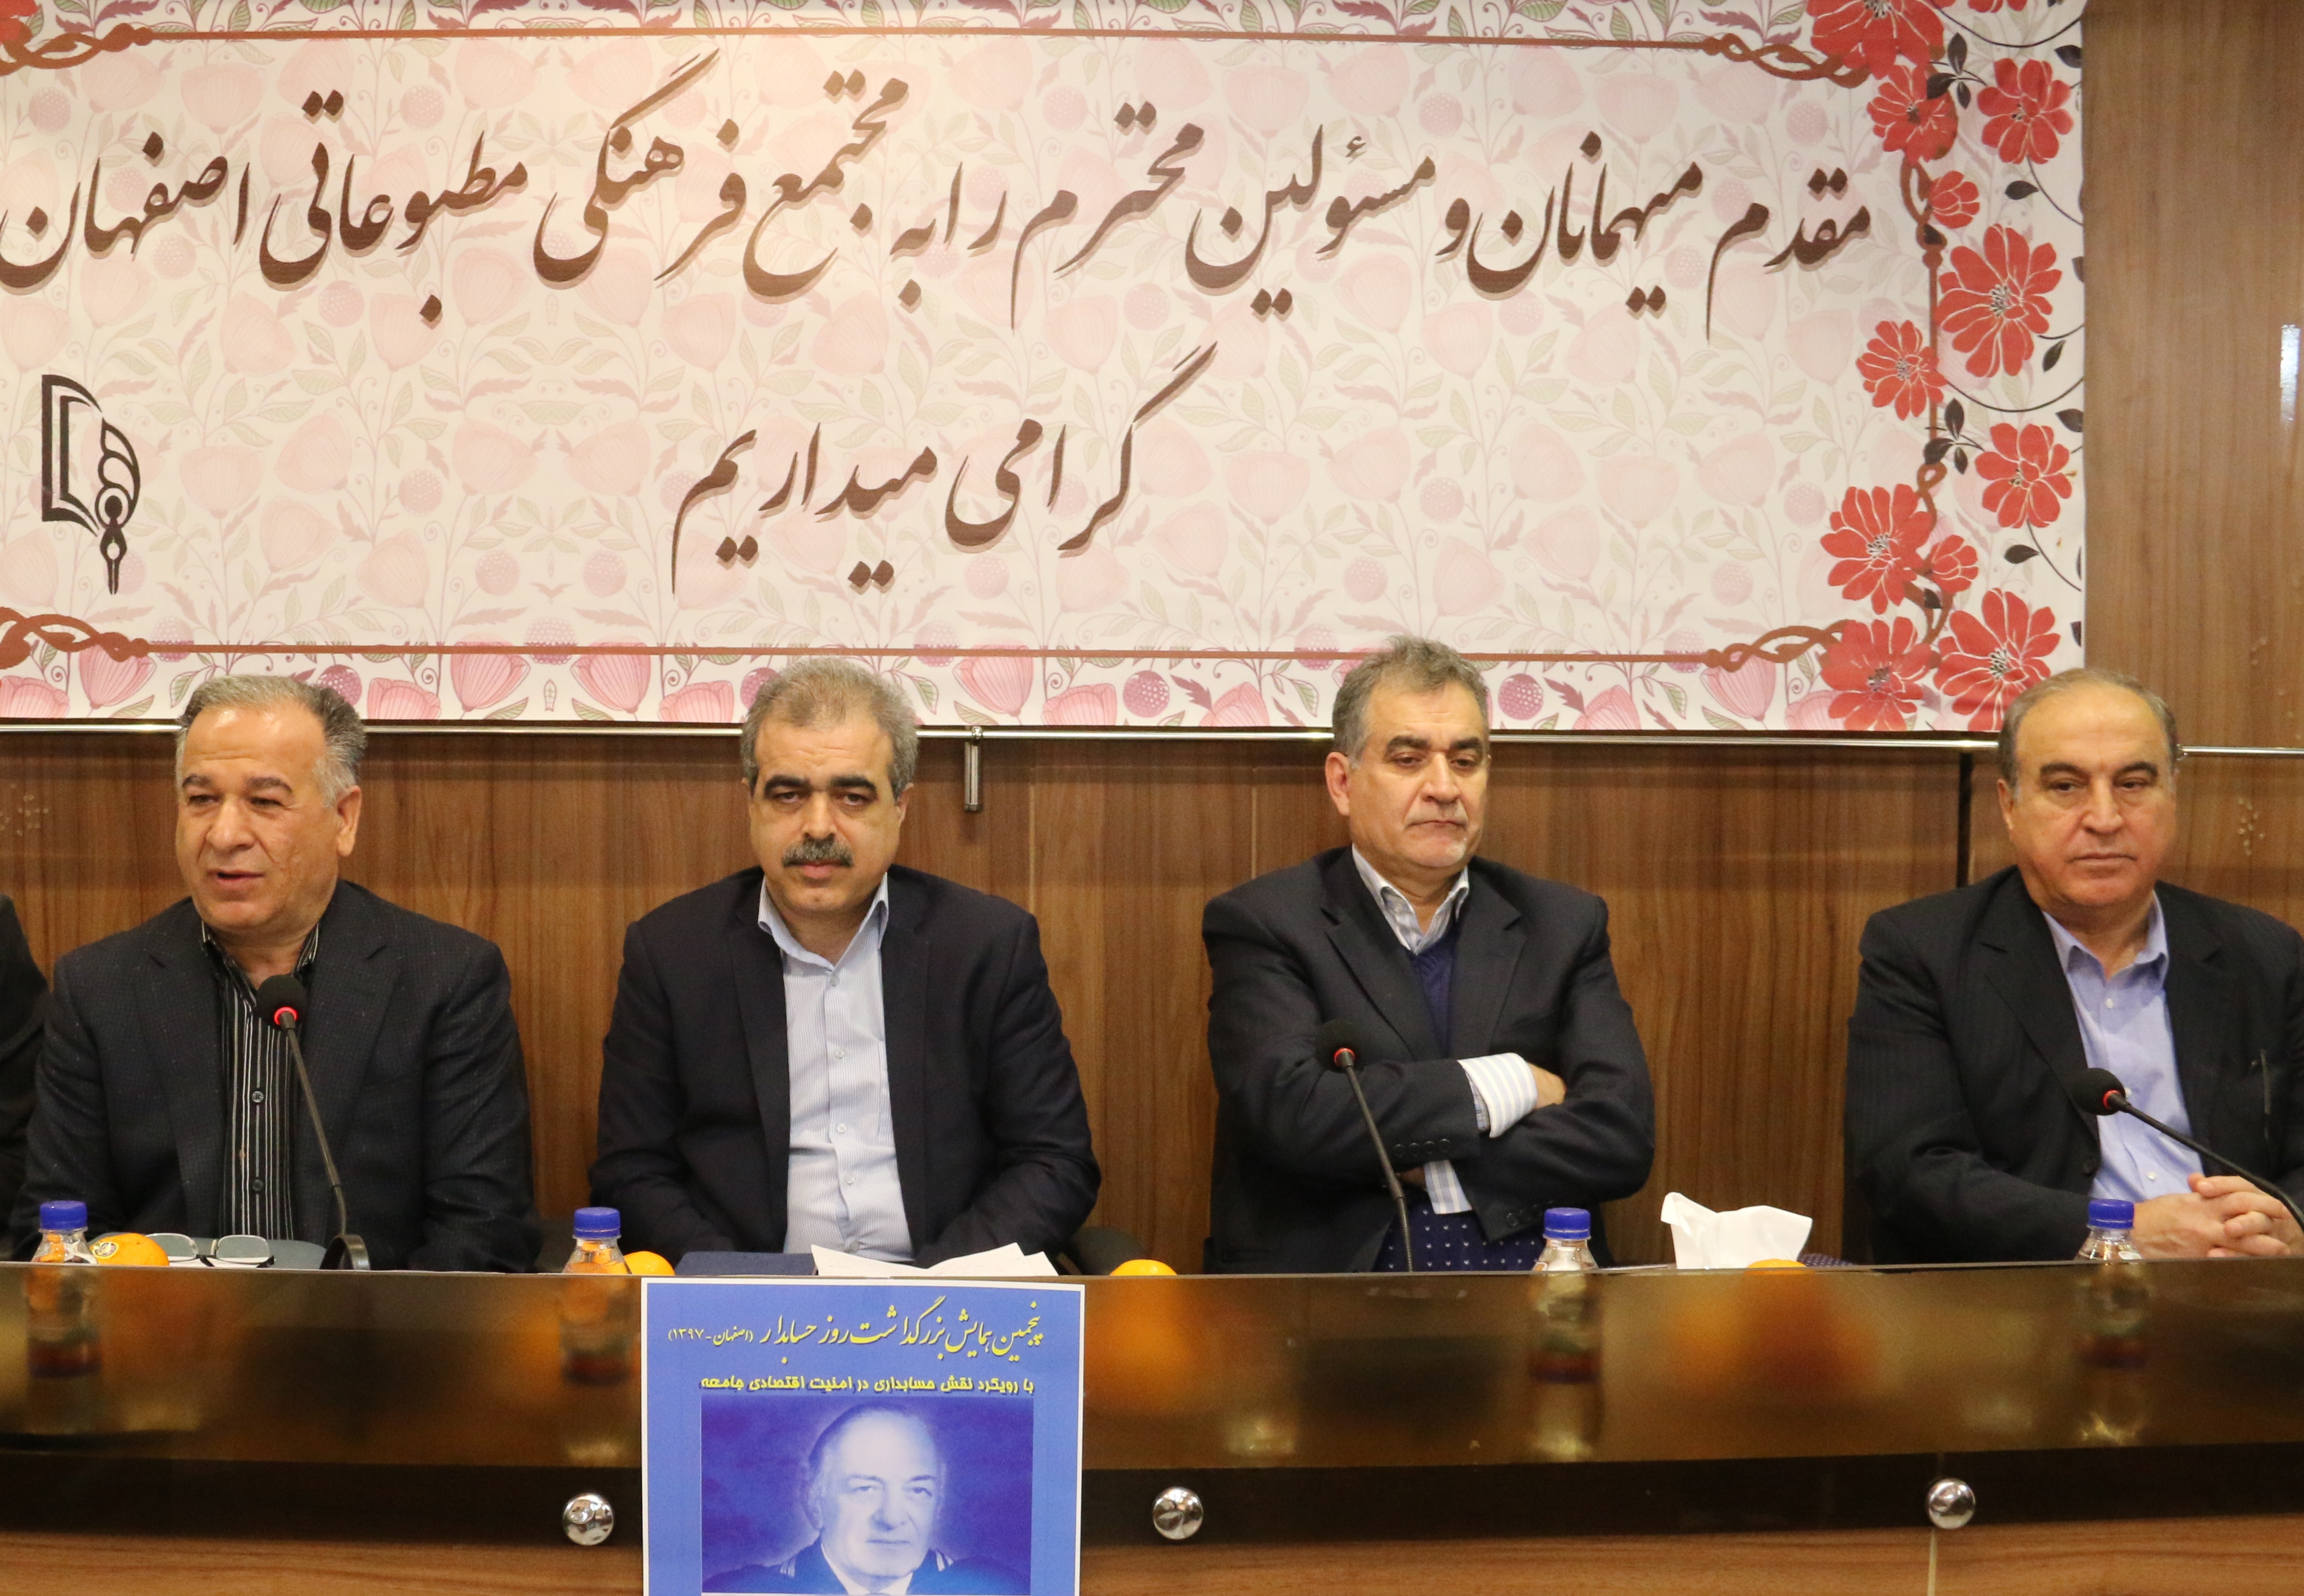 پنجمین همایش بزرگداشت روز حسابدار در اصفهان برگزار می شود